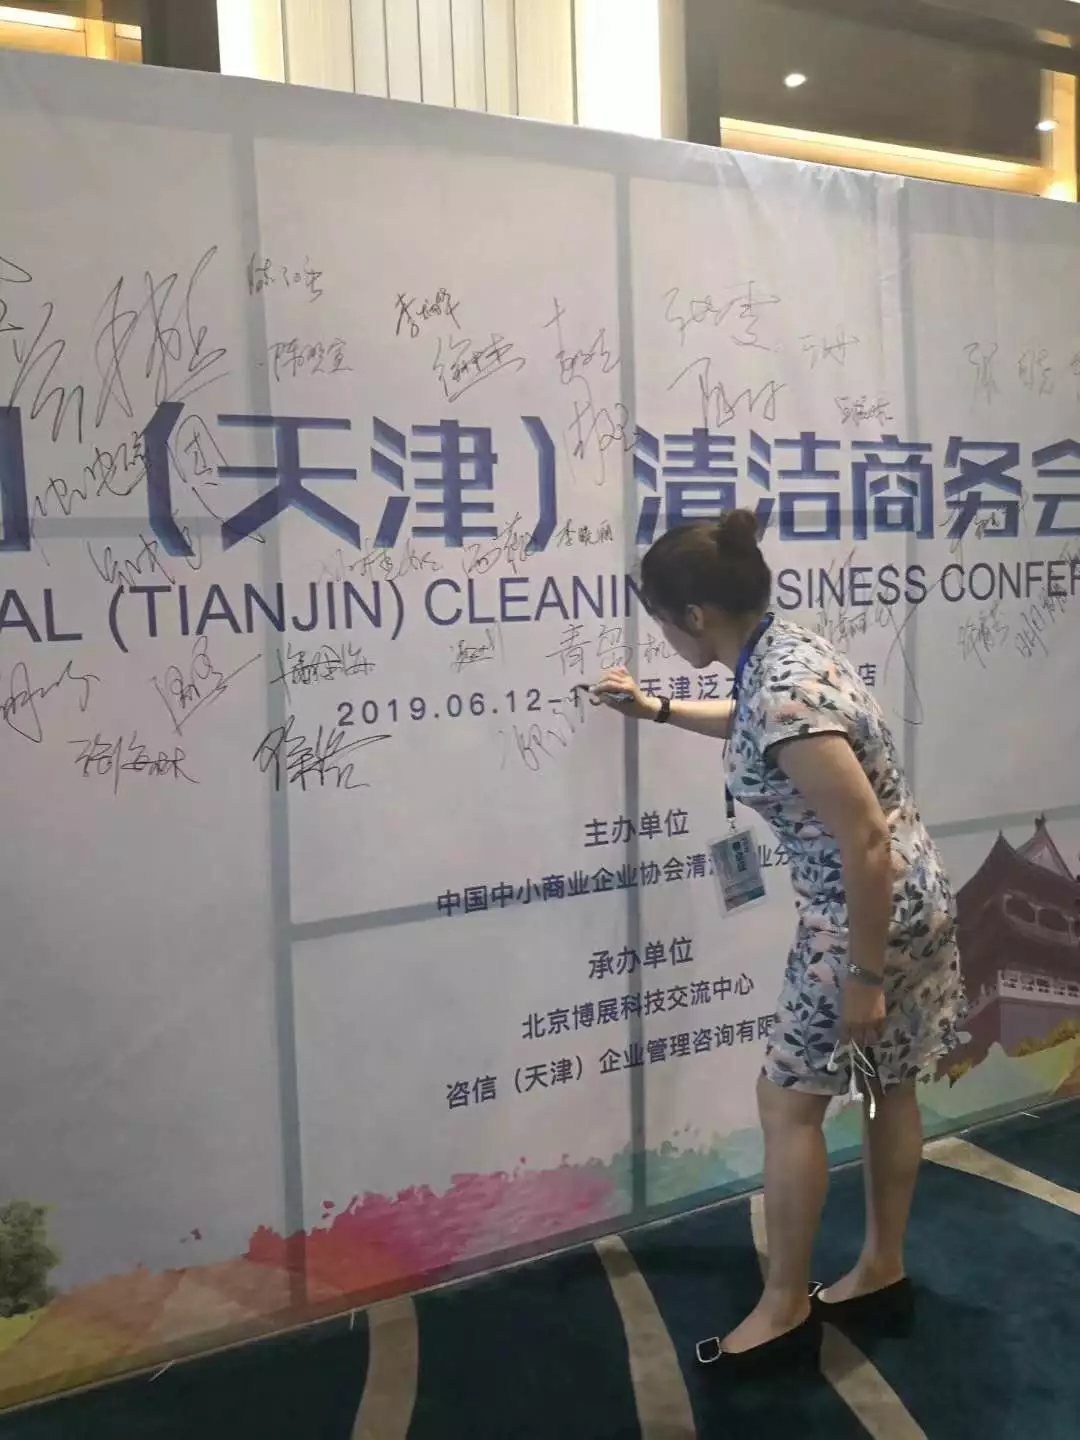 祝贺全国（天津）清洁商务会议圆满成功